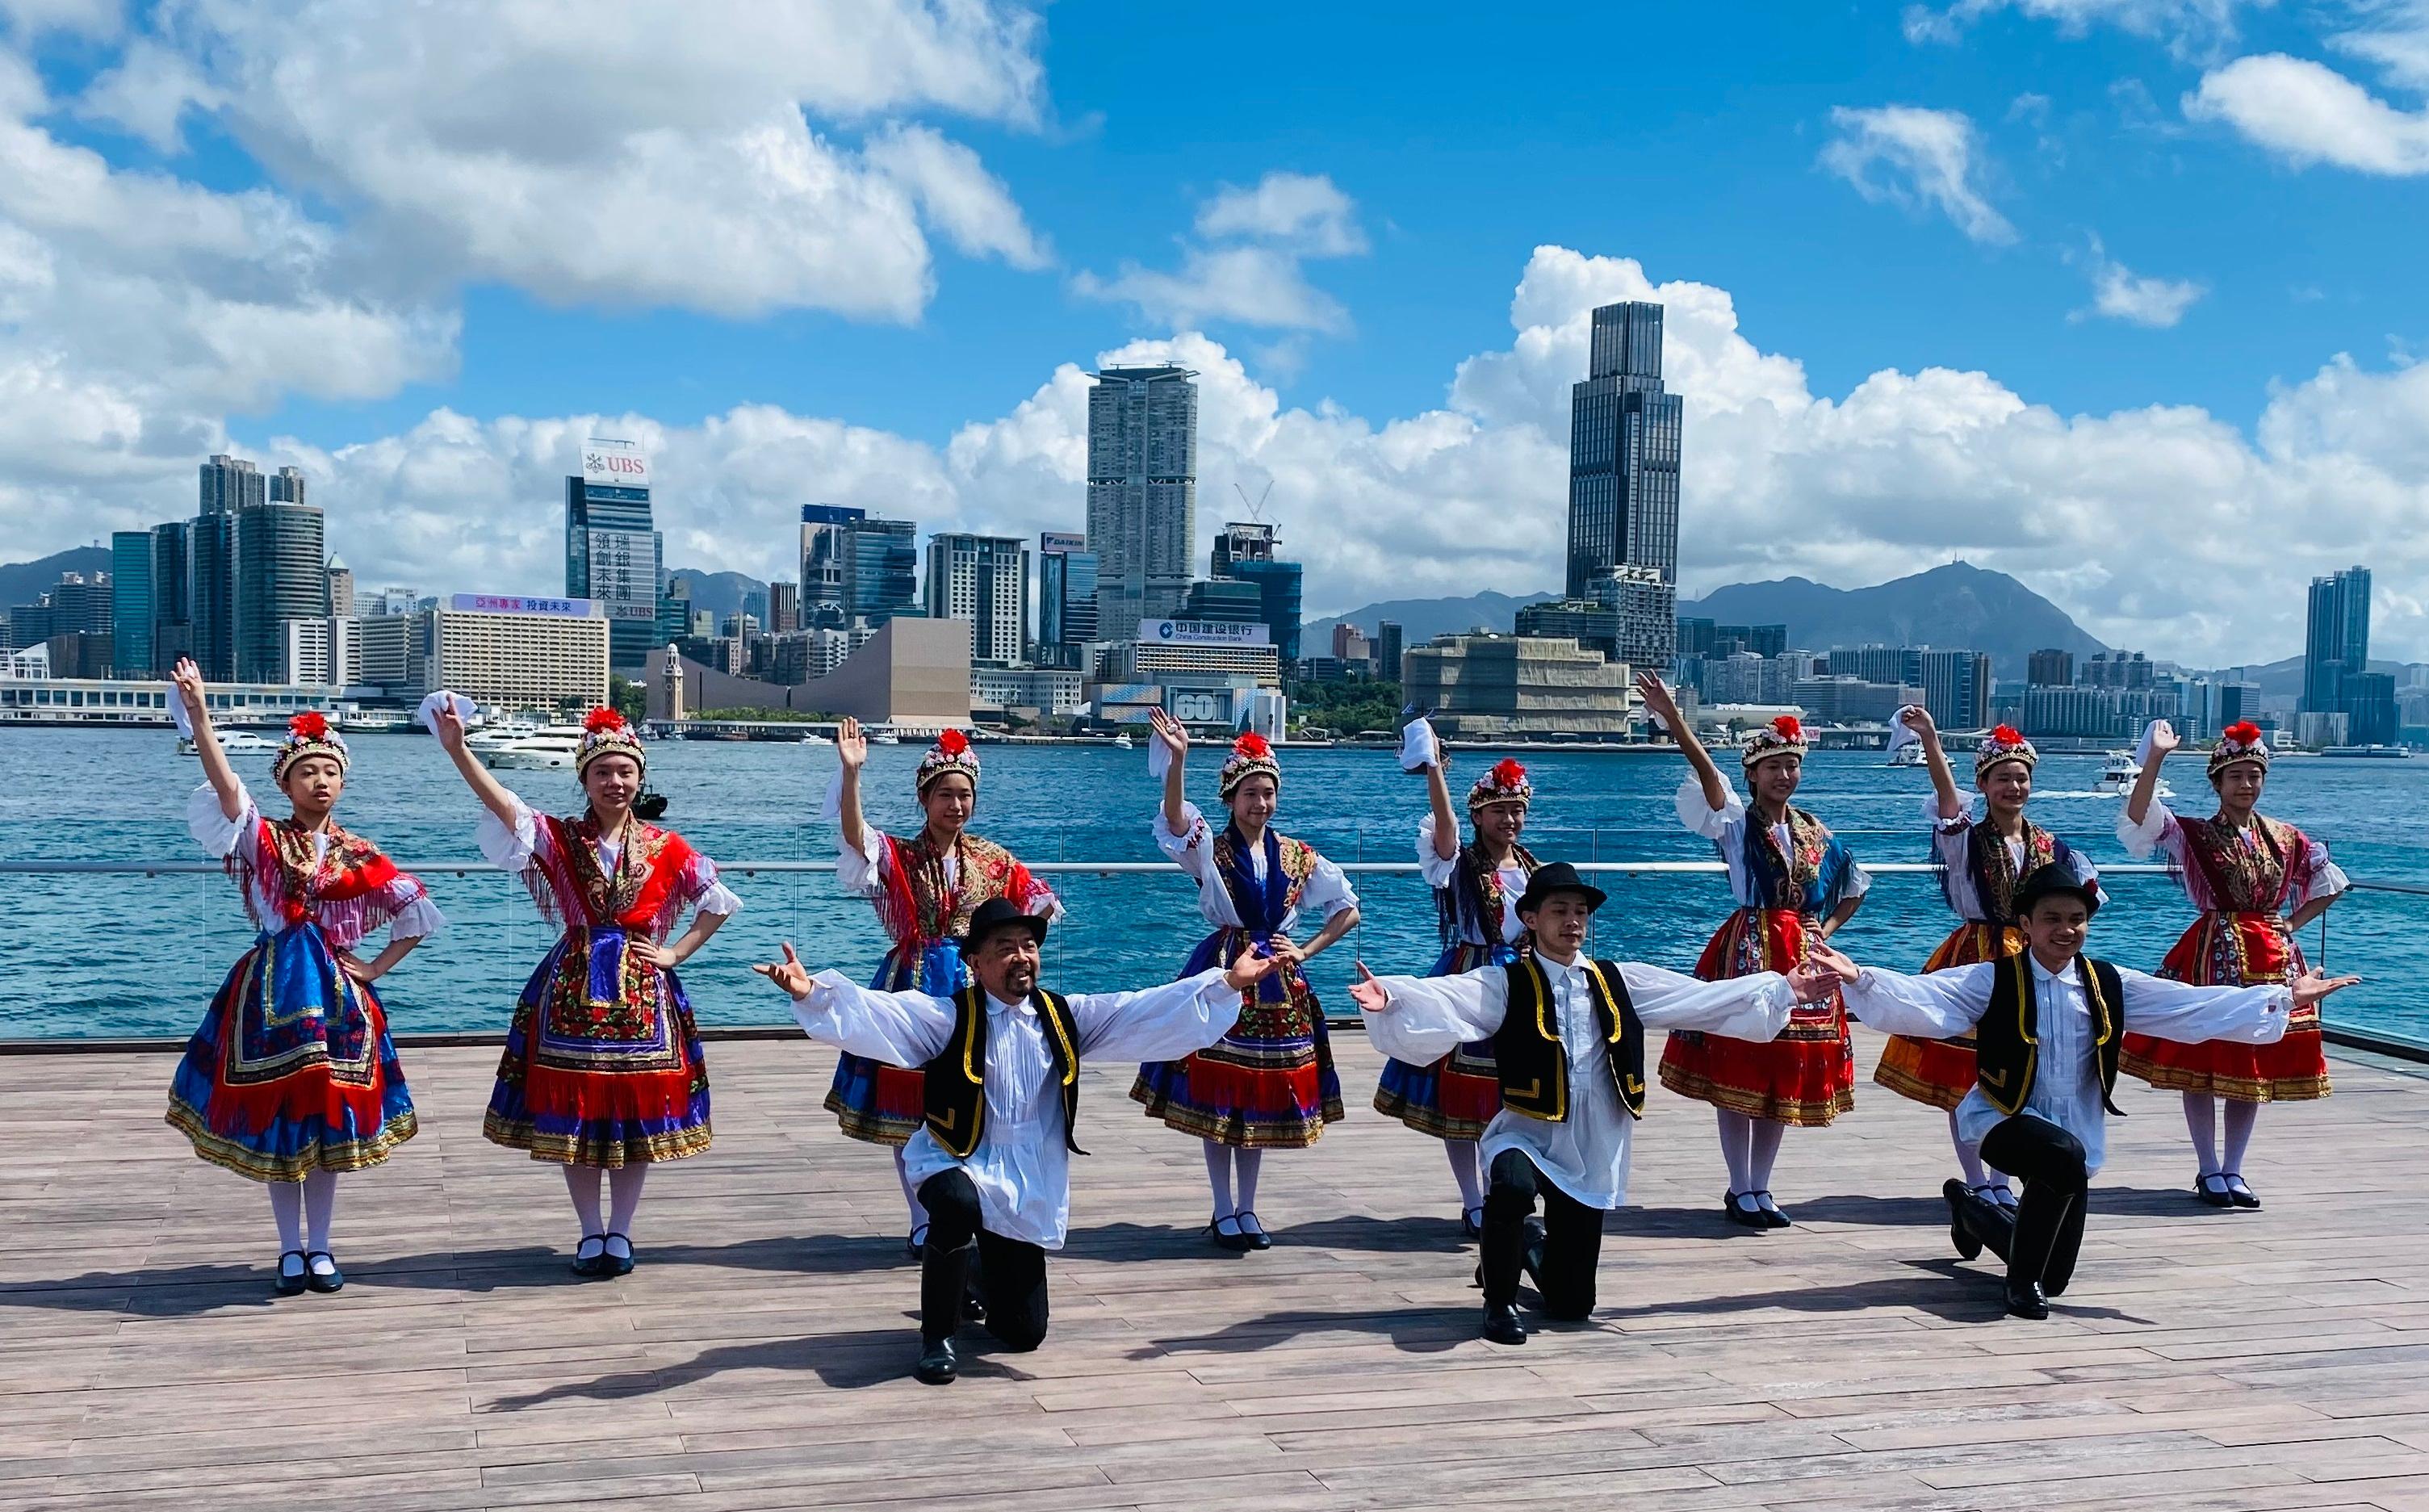 為慶祝香港特別行政區成立二十五周年，康樂及文化事務署十一月十三日（星期日）下午在香港文化中心露天廣場舉行「國際藝采」，透過豐富表演和活動，展現世界各地的獨特文化和演藝才華。圖示穿着美麗民族服飾的匈牙利舞者。